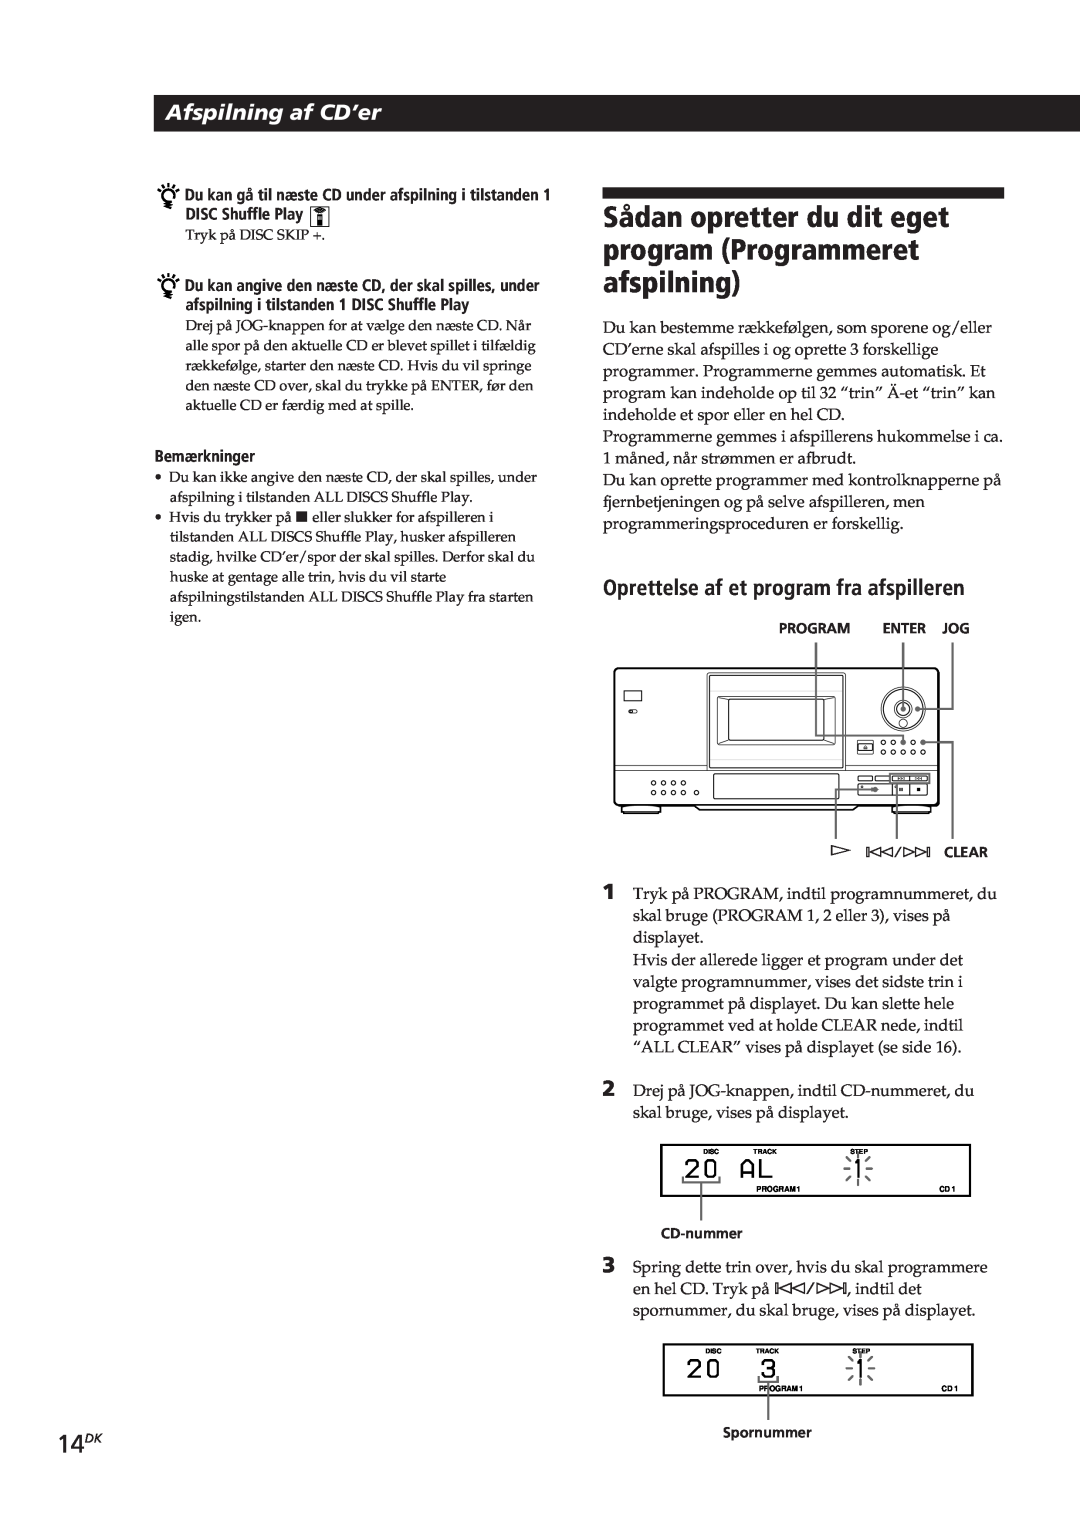 Sony CDP-CX153 manual 14DK, Afspilning af CD’er, Oprettelse af et program fra afspilleren, Bemærkninger 